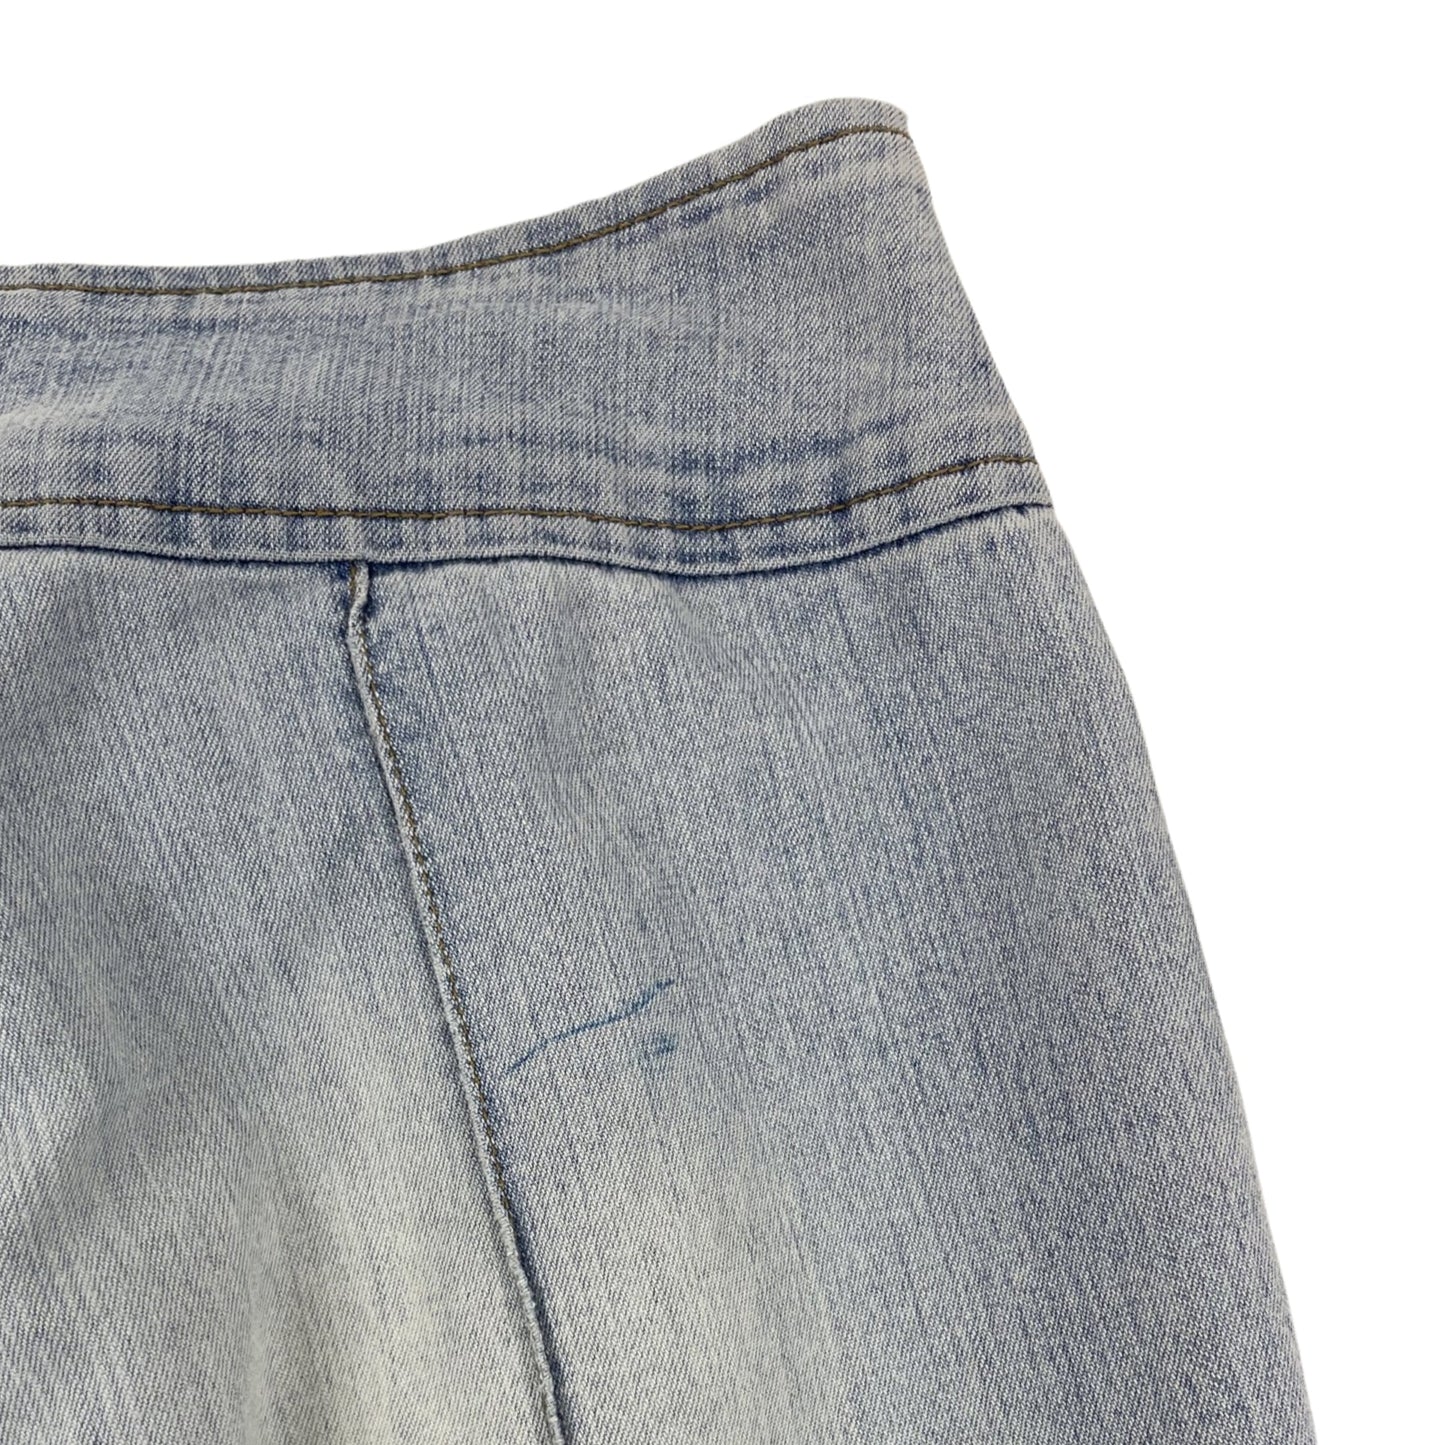 Vintage Y2K Denim Belt Buckle Flared Jeans Light Blue 10